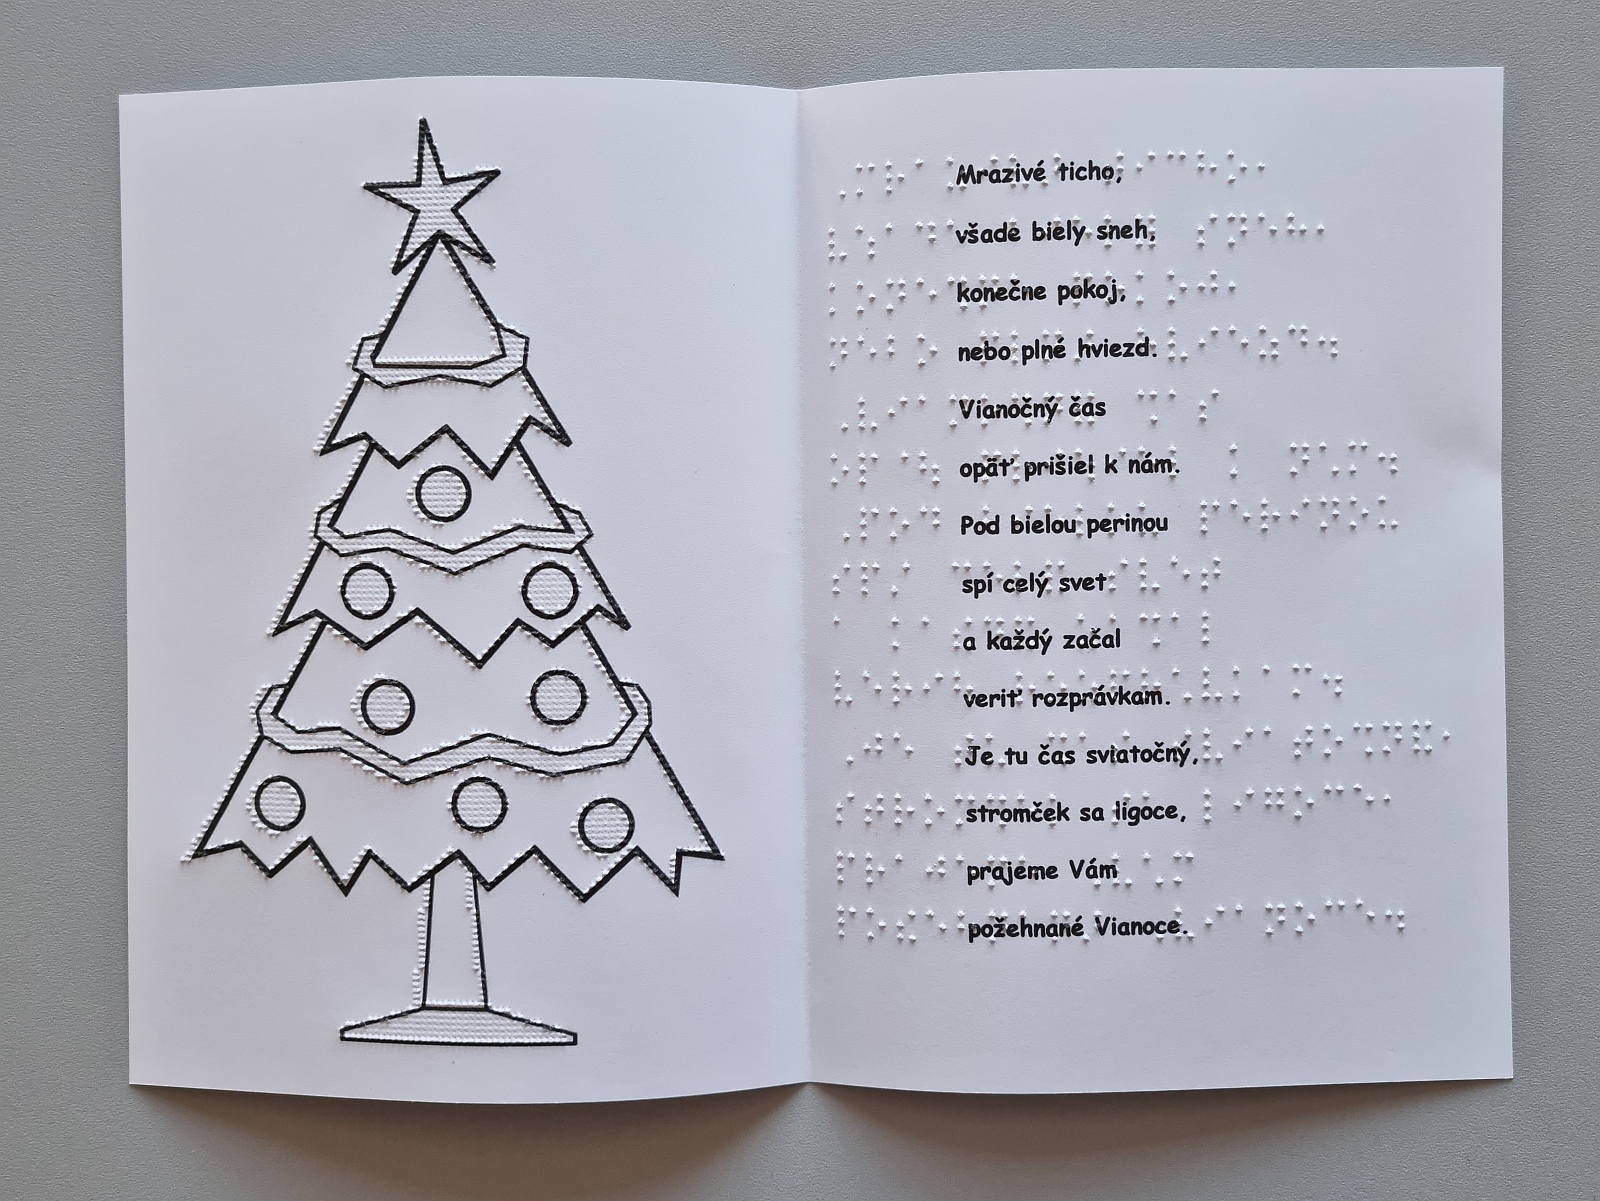 Vianočná pohľadnica, na obrázku je ozdobený vianočný stromček. Text v braili aj čiernotlači.